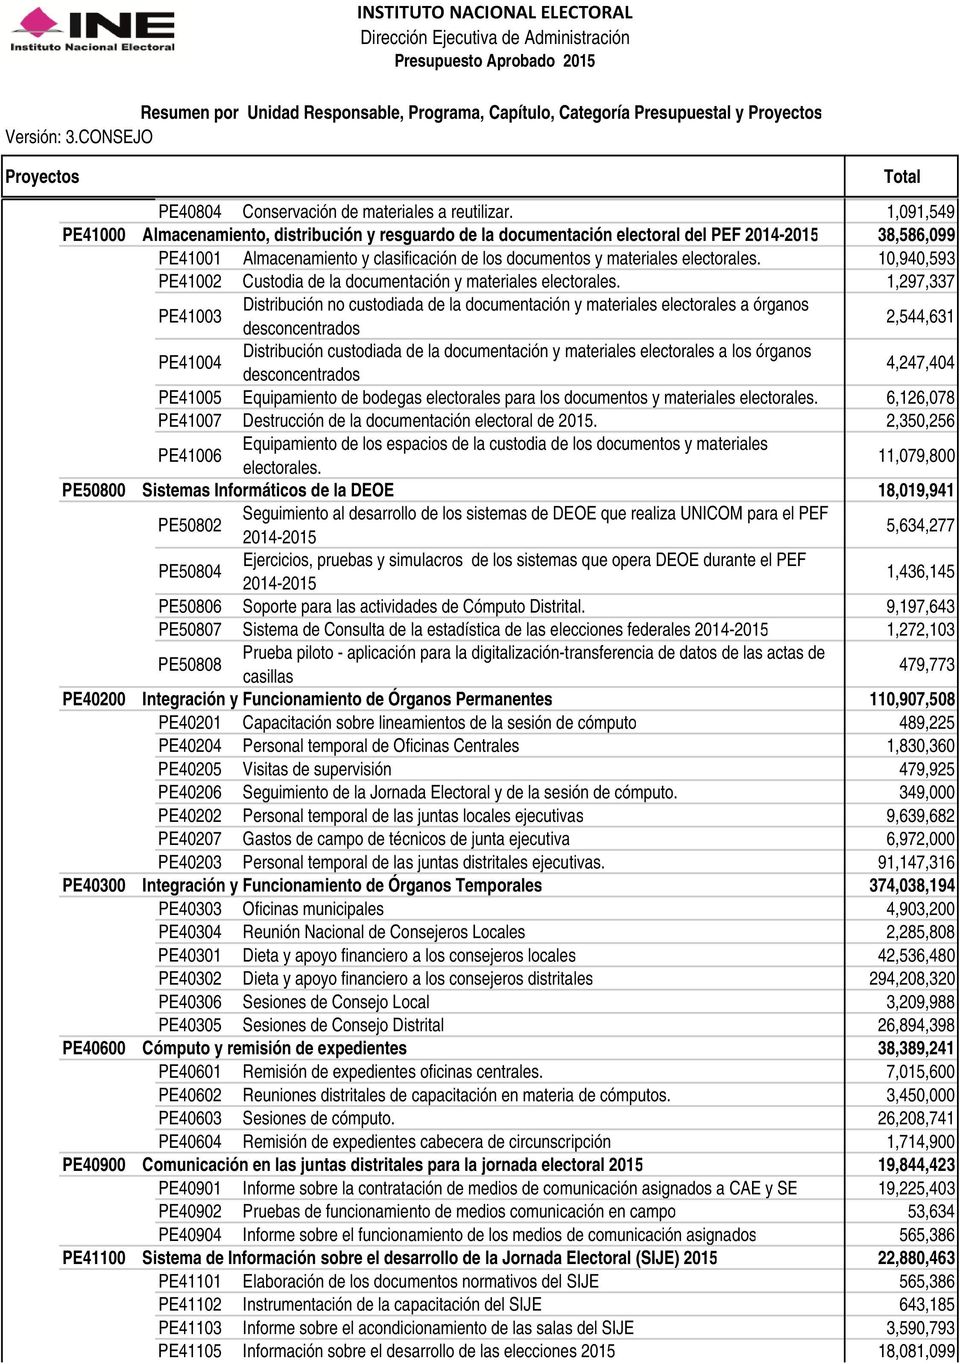 10,940,593 PE41002 Custodia de la documentación y materiales electorales.